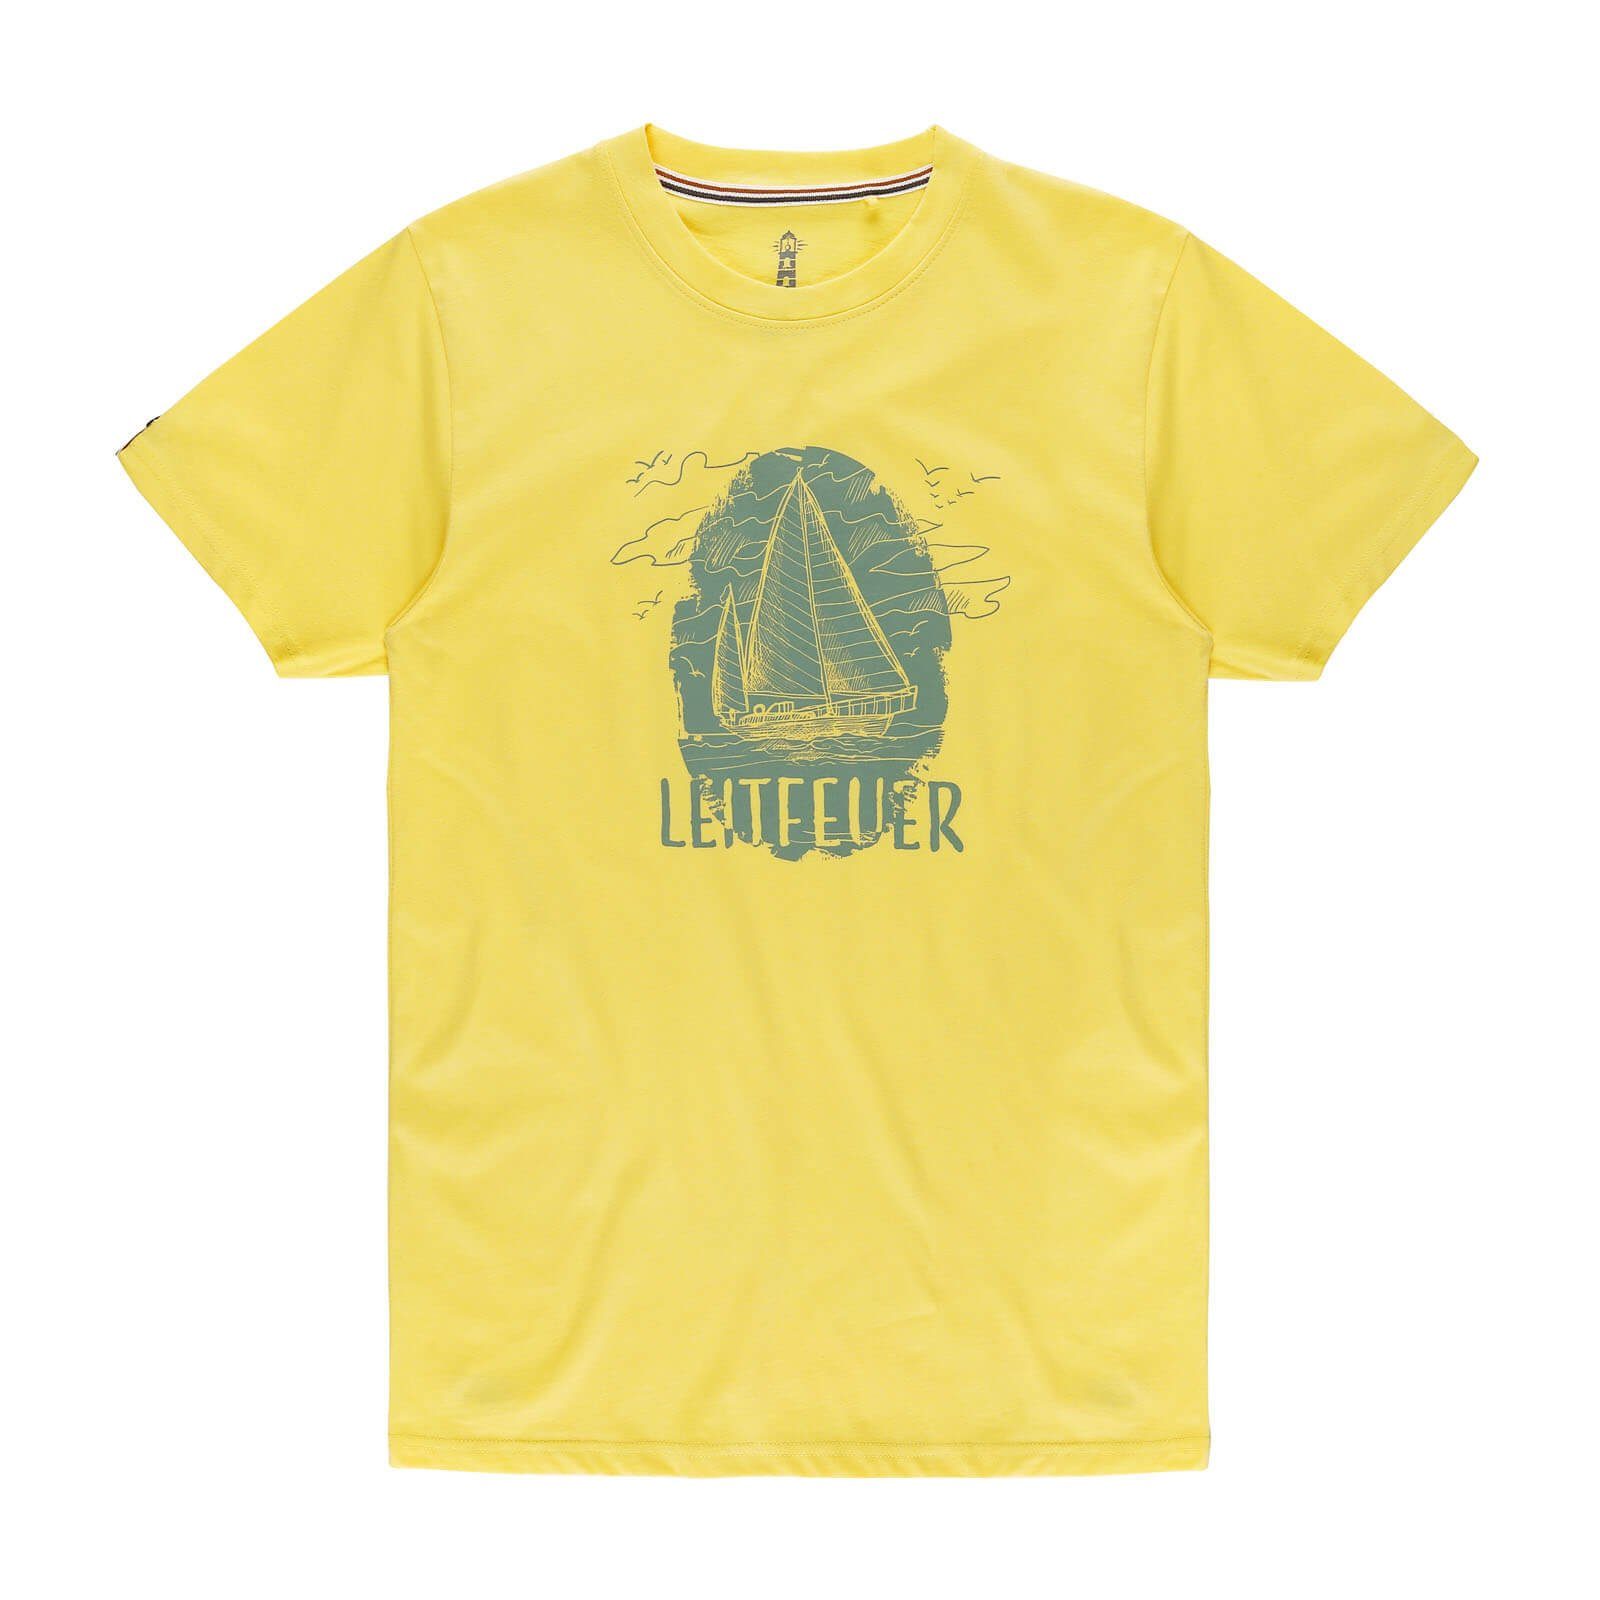 Leitfeuer T-Shirt Herren Sommershirt mit Front-Print Segelschiff und Rundhalsausschnitt gelb